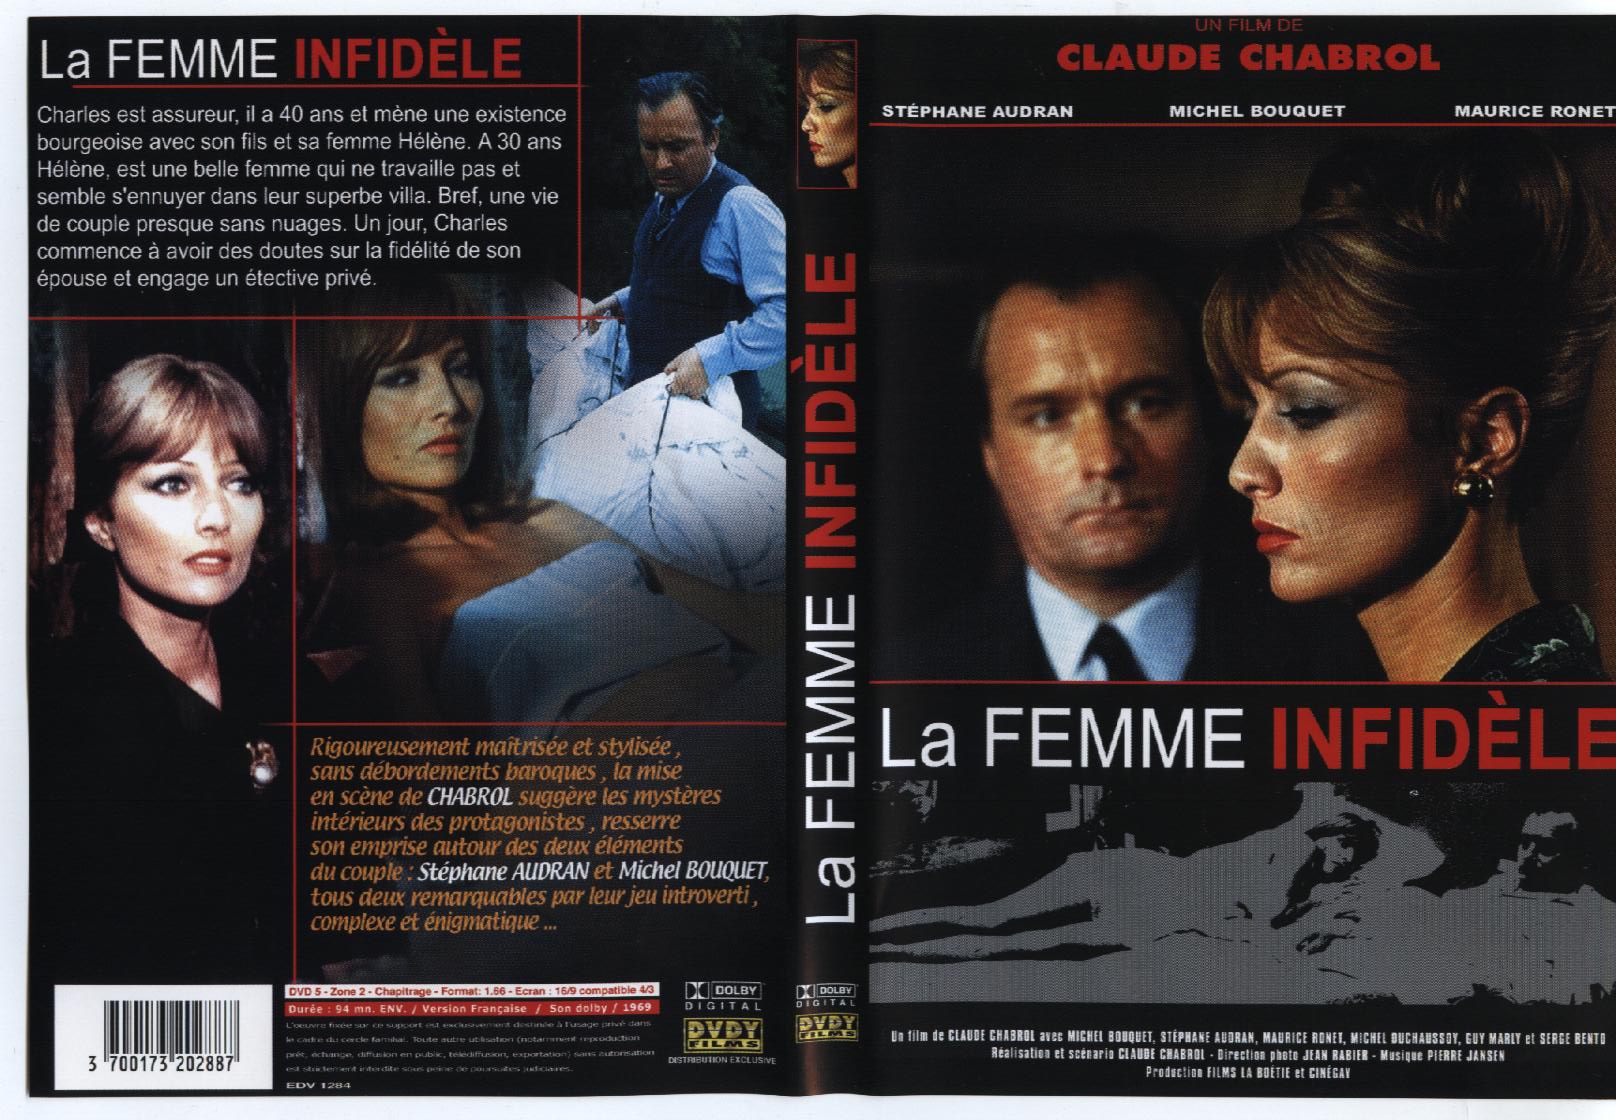 Jaquette DVD La femme infidle